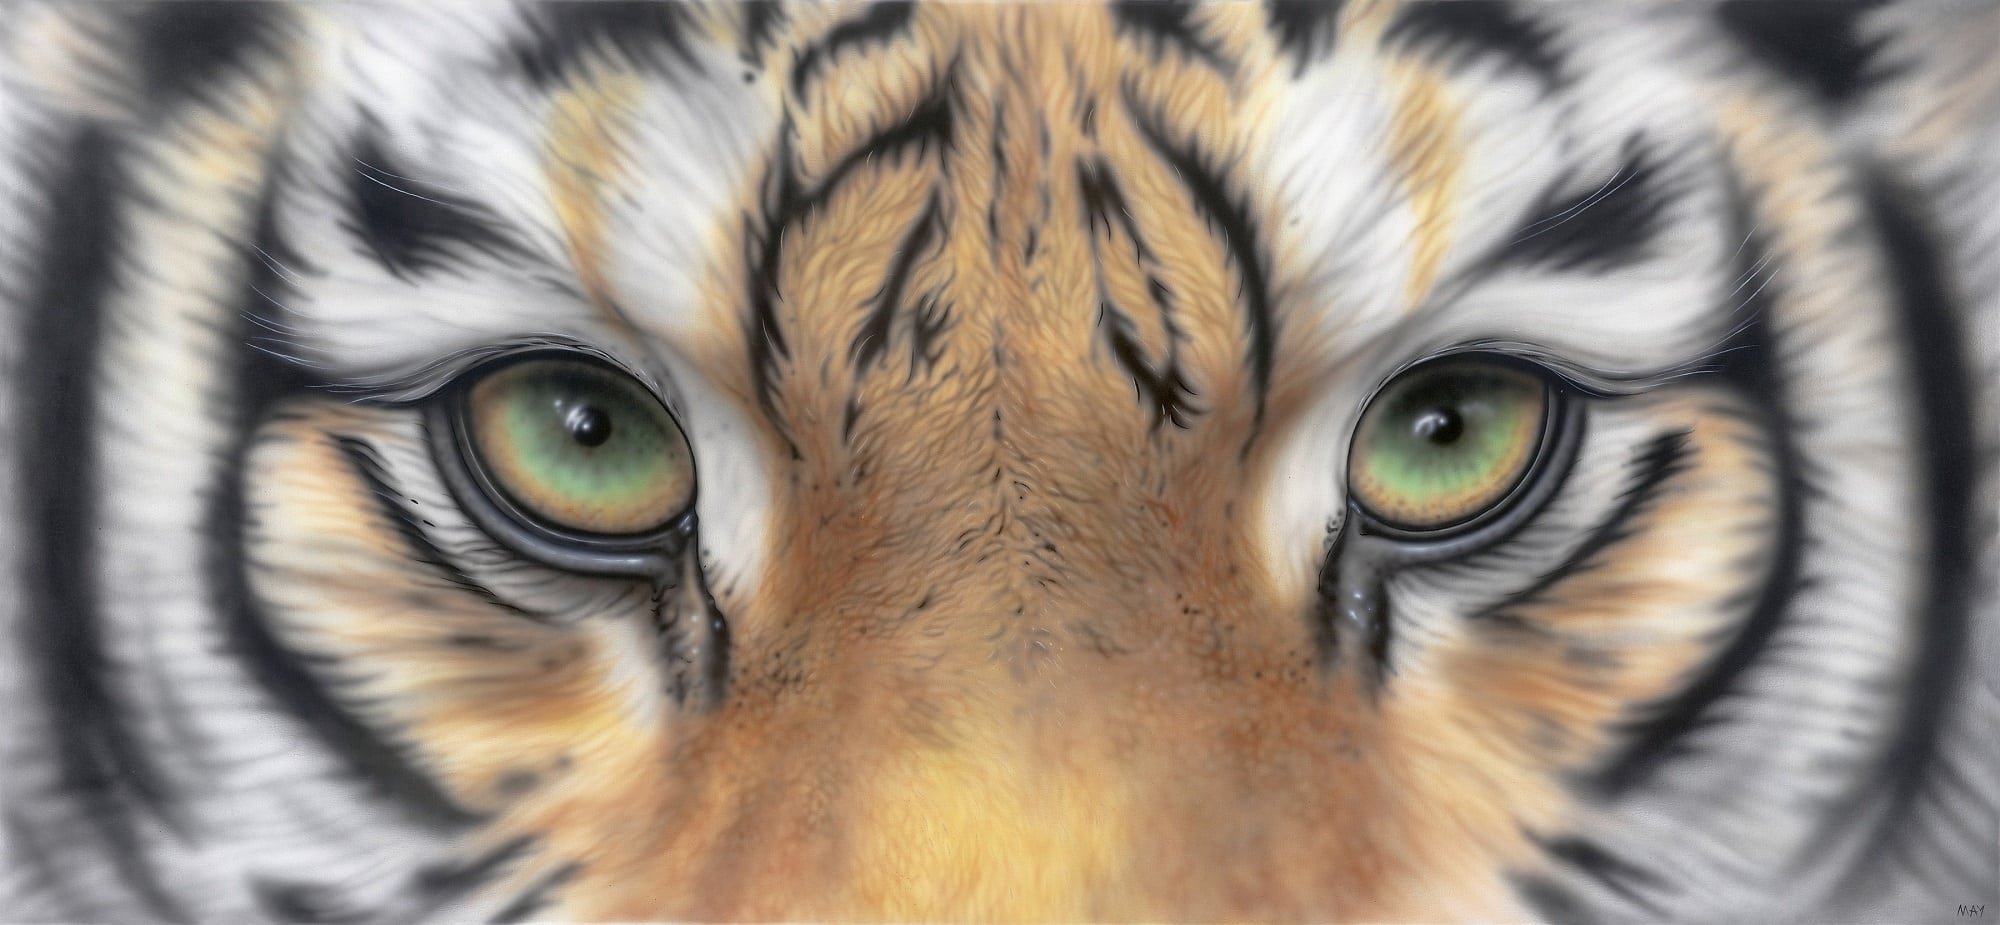 Глаза как у тигра у человека